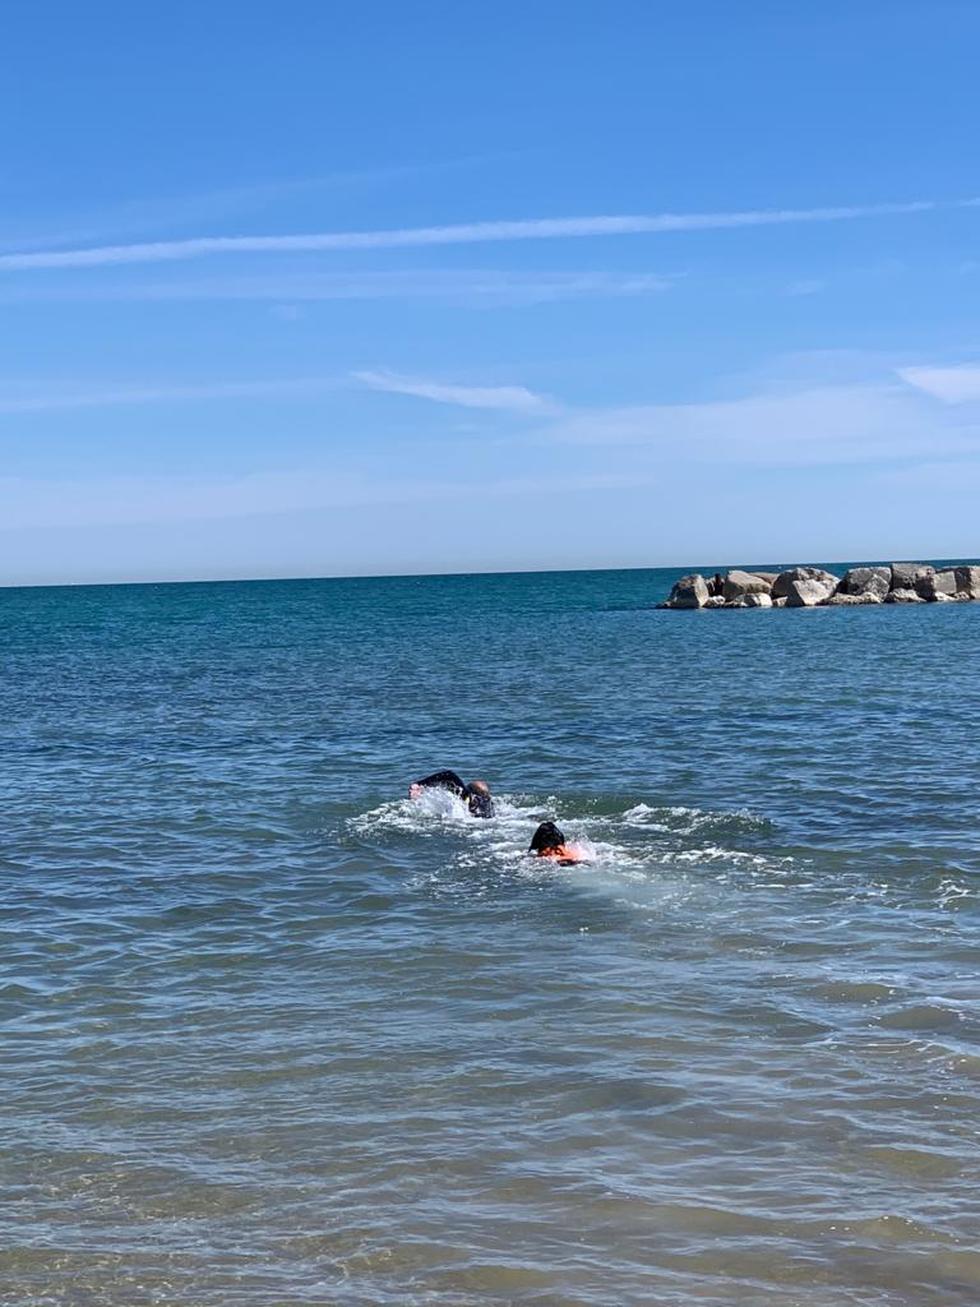 Nuotata con la cucciola AIKA,labrador di 5 mesi in addestramento per diventare unita’ cinofila da salvataggio